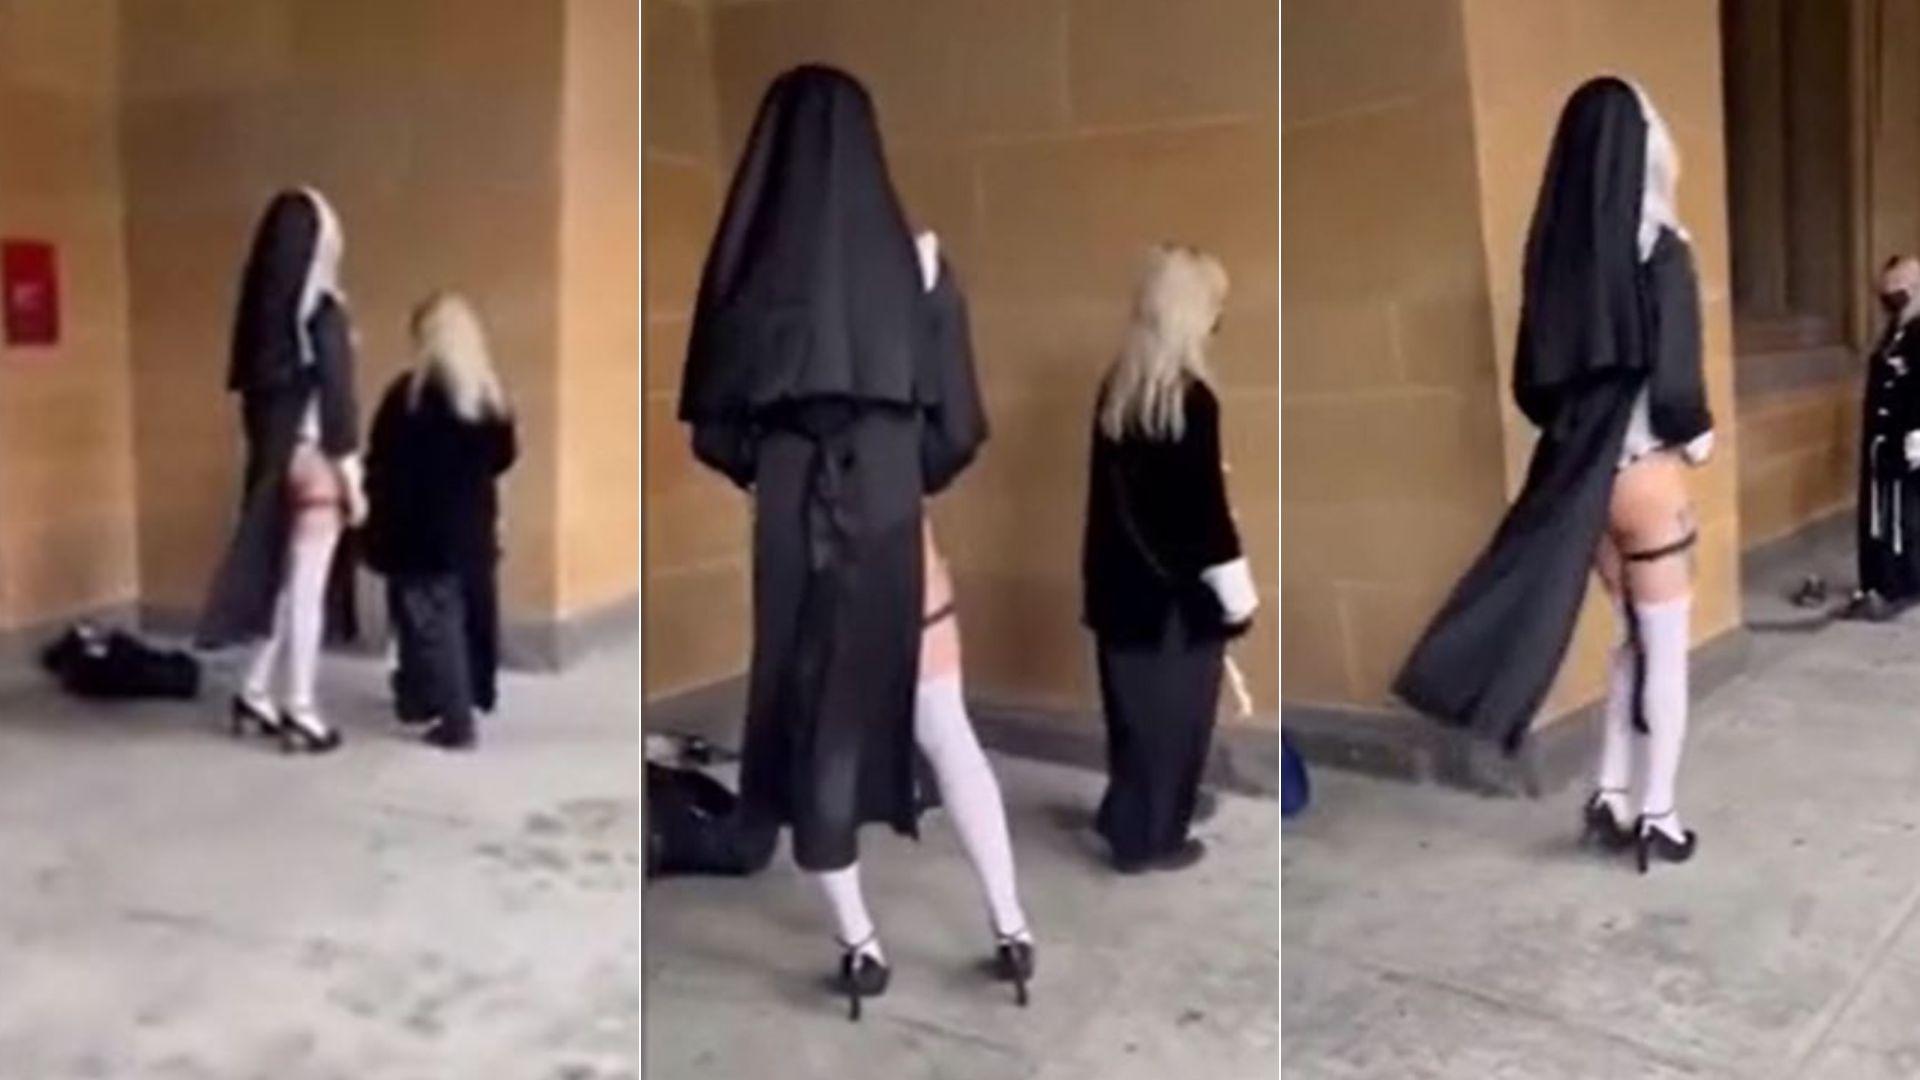 Imagini scandaloase în fața unei biserici. O femeie se plimbă în fața lăcașului într-un costum sumar de călugăriță și pe tocuri